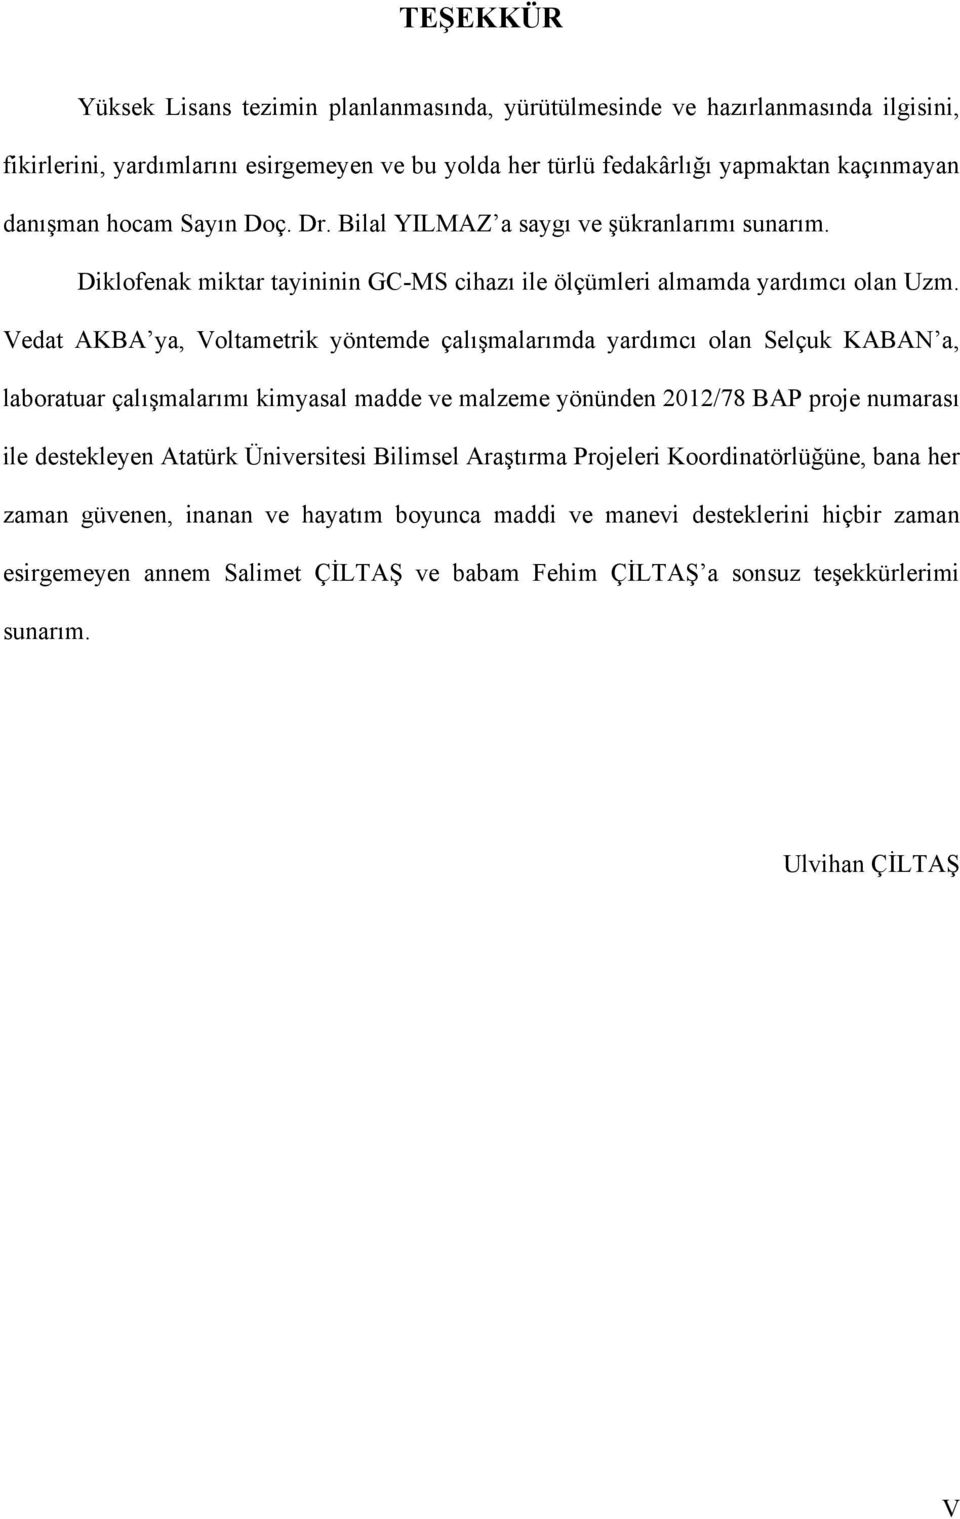 Vedat AKBA ya, Voltametrik yöntemde çalışmalarımda yardımcı olan Selçuk KABAN a, laboratuar çalışmalarımı kimyasal madde ve malzeme yönünden 2012/78 BAP proje numarası ile destekleyen Atatürk